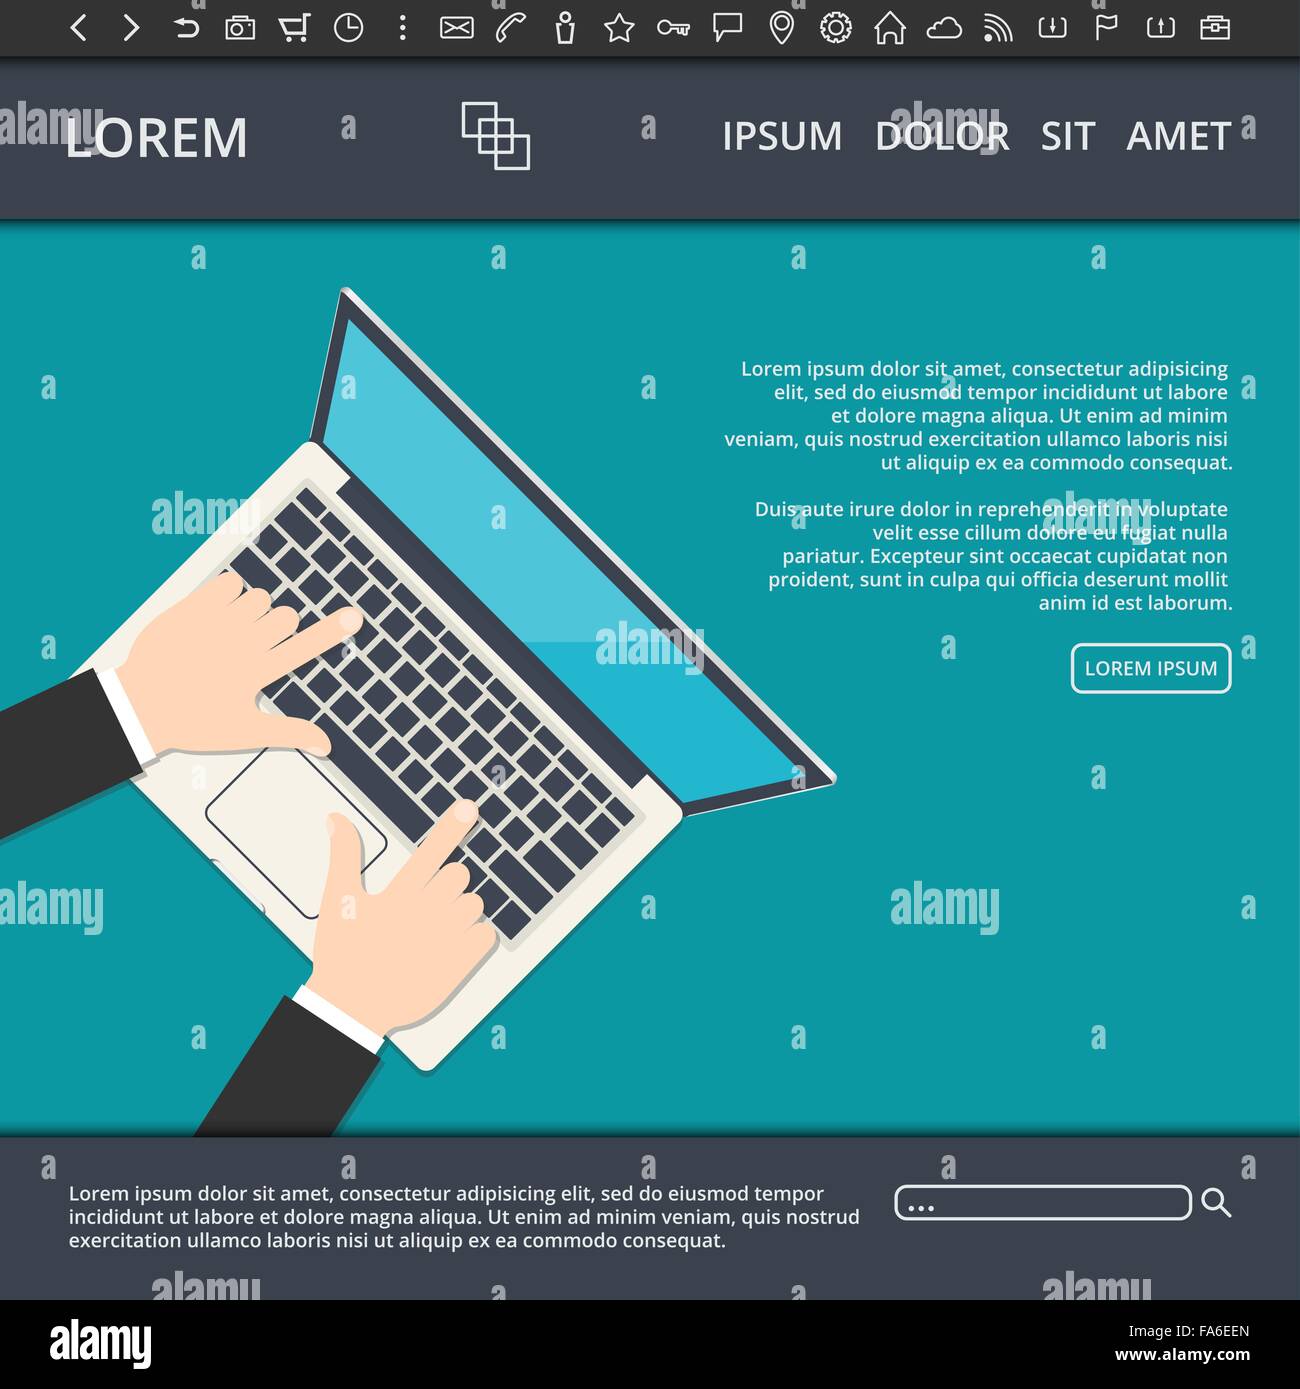 Illustrazione Vettoriale di tipo piatto web design template con elementi del sito web e di un imprenditore lavorando sul suo computer portatile Illustrazione Vettoriale